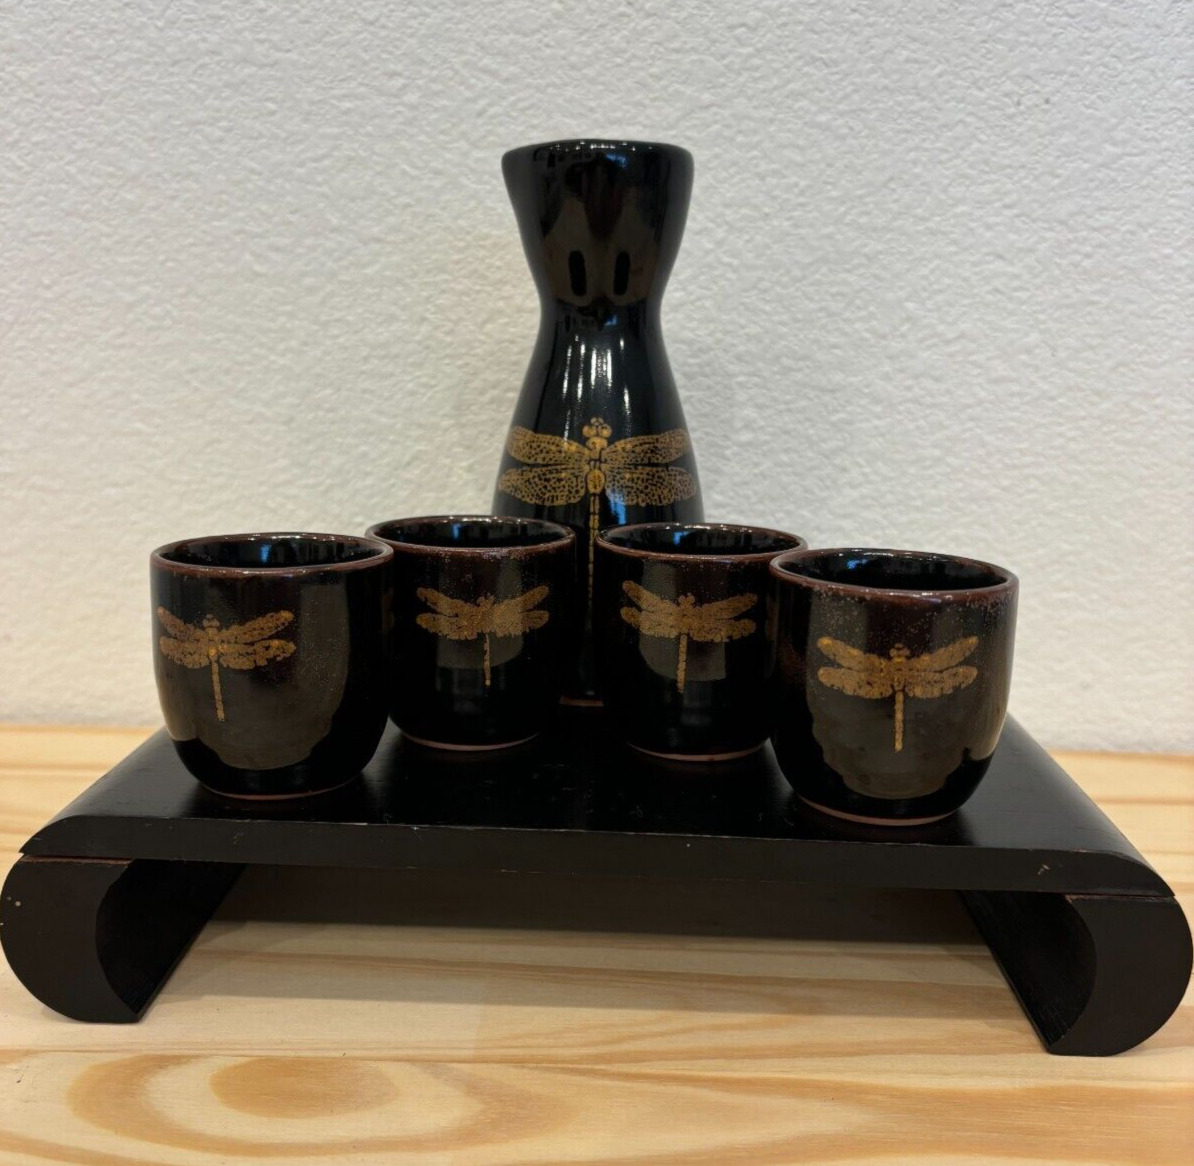 Made in Japan Miya 6 Piece Sake Set Carafe, 4 Cups & Stand BLK Dragonfly Design